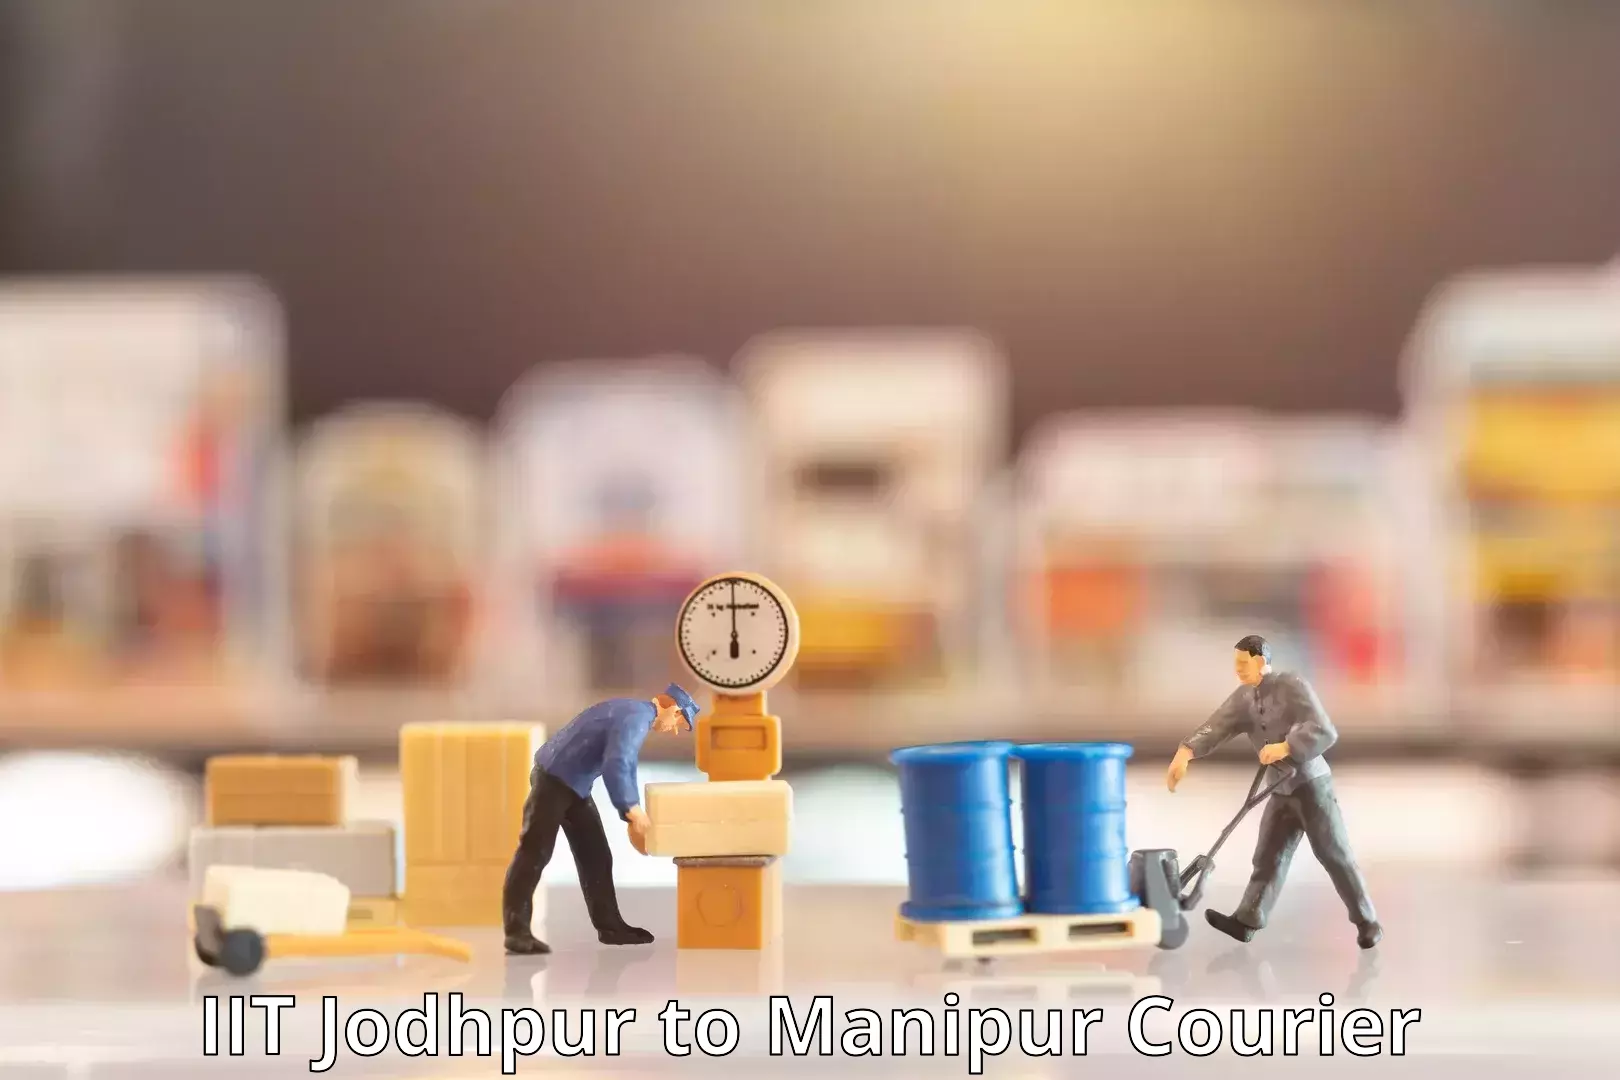 Courier service innovation IIT Jodhpur to Kanti